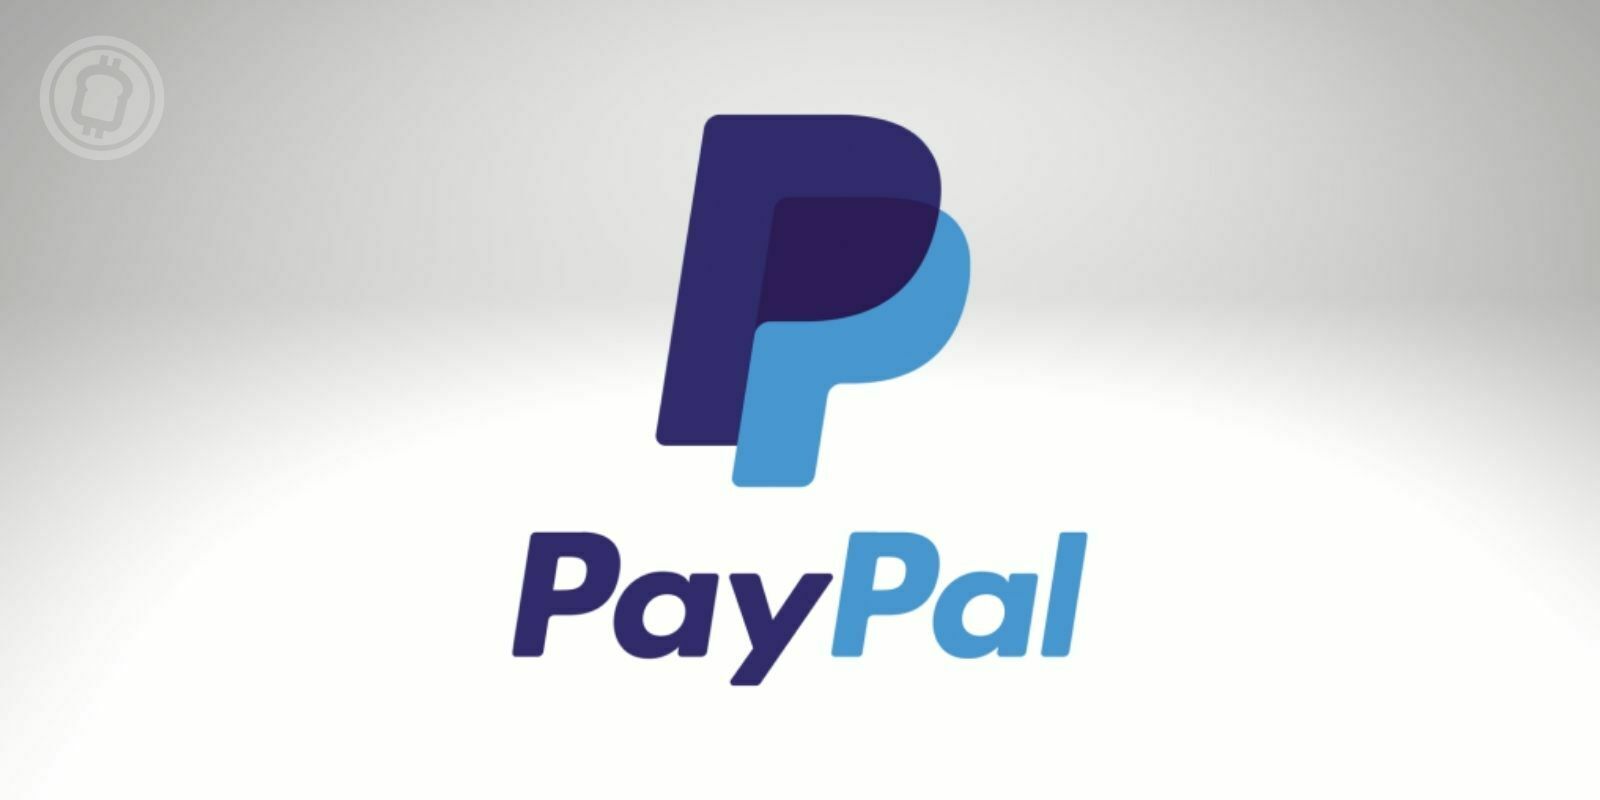 PayPal cherche à englober tous les services liés aux cryptomonnaies et à la blockchain